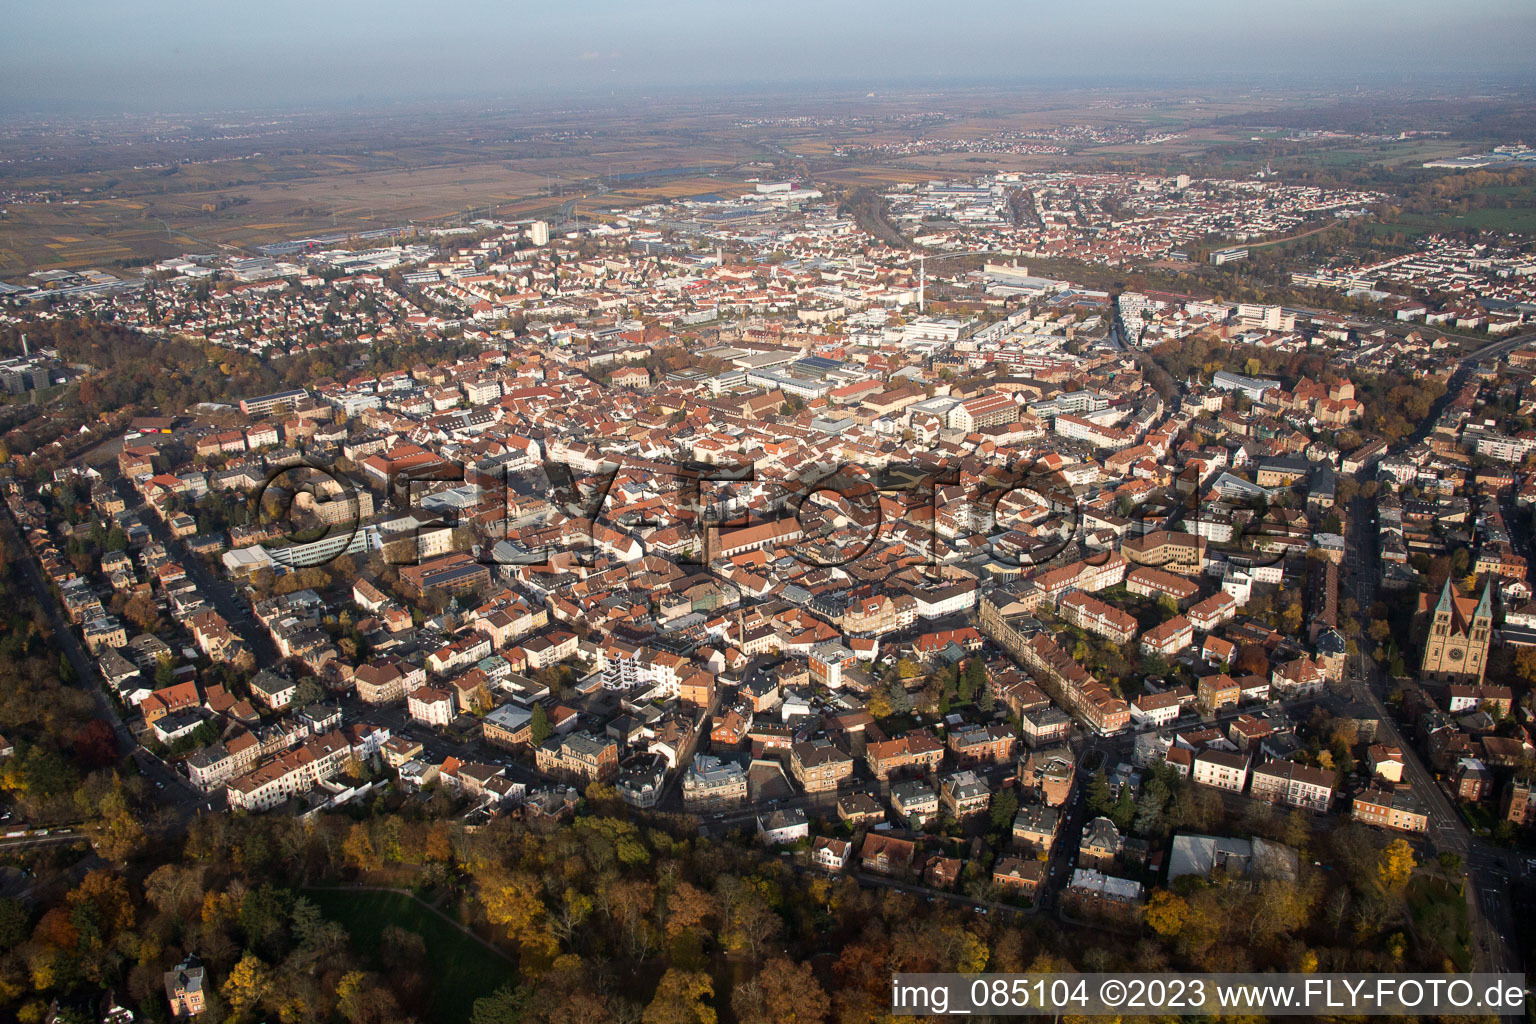 Landau in der Pfalz im Bundesland Rheinland-Pfalz, Deutschland von oben gesehen